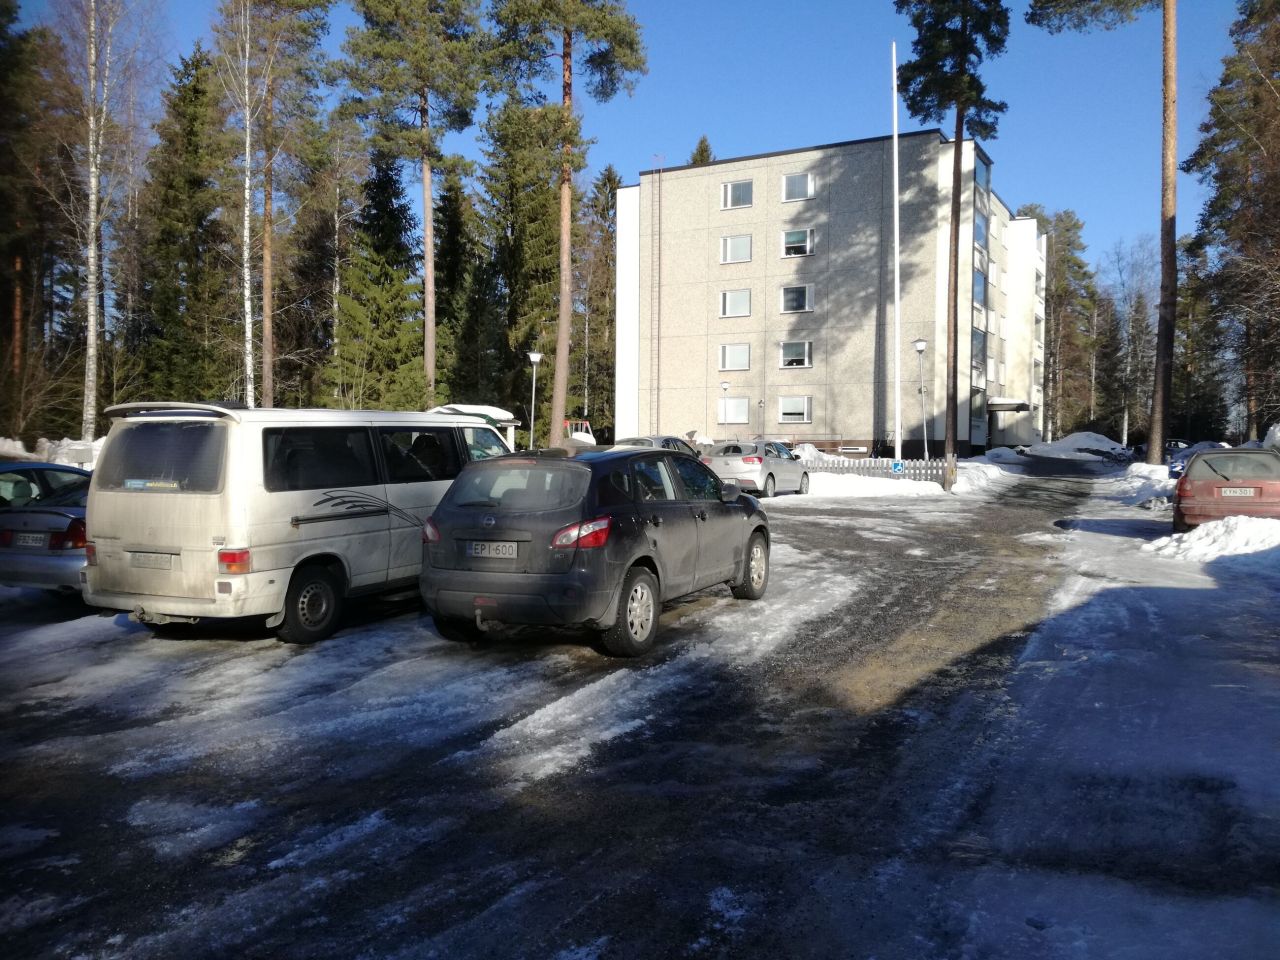 Flat in Mänttä, Finland, 36 sq.m - picture 1